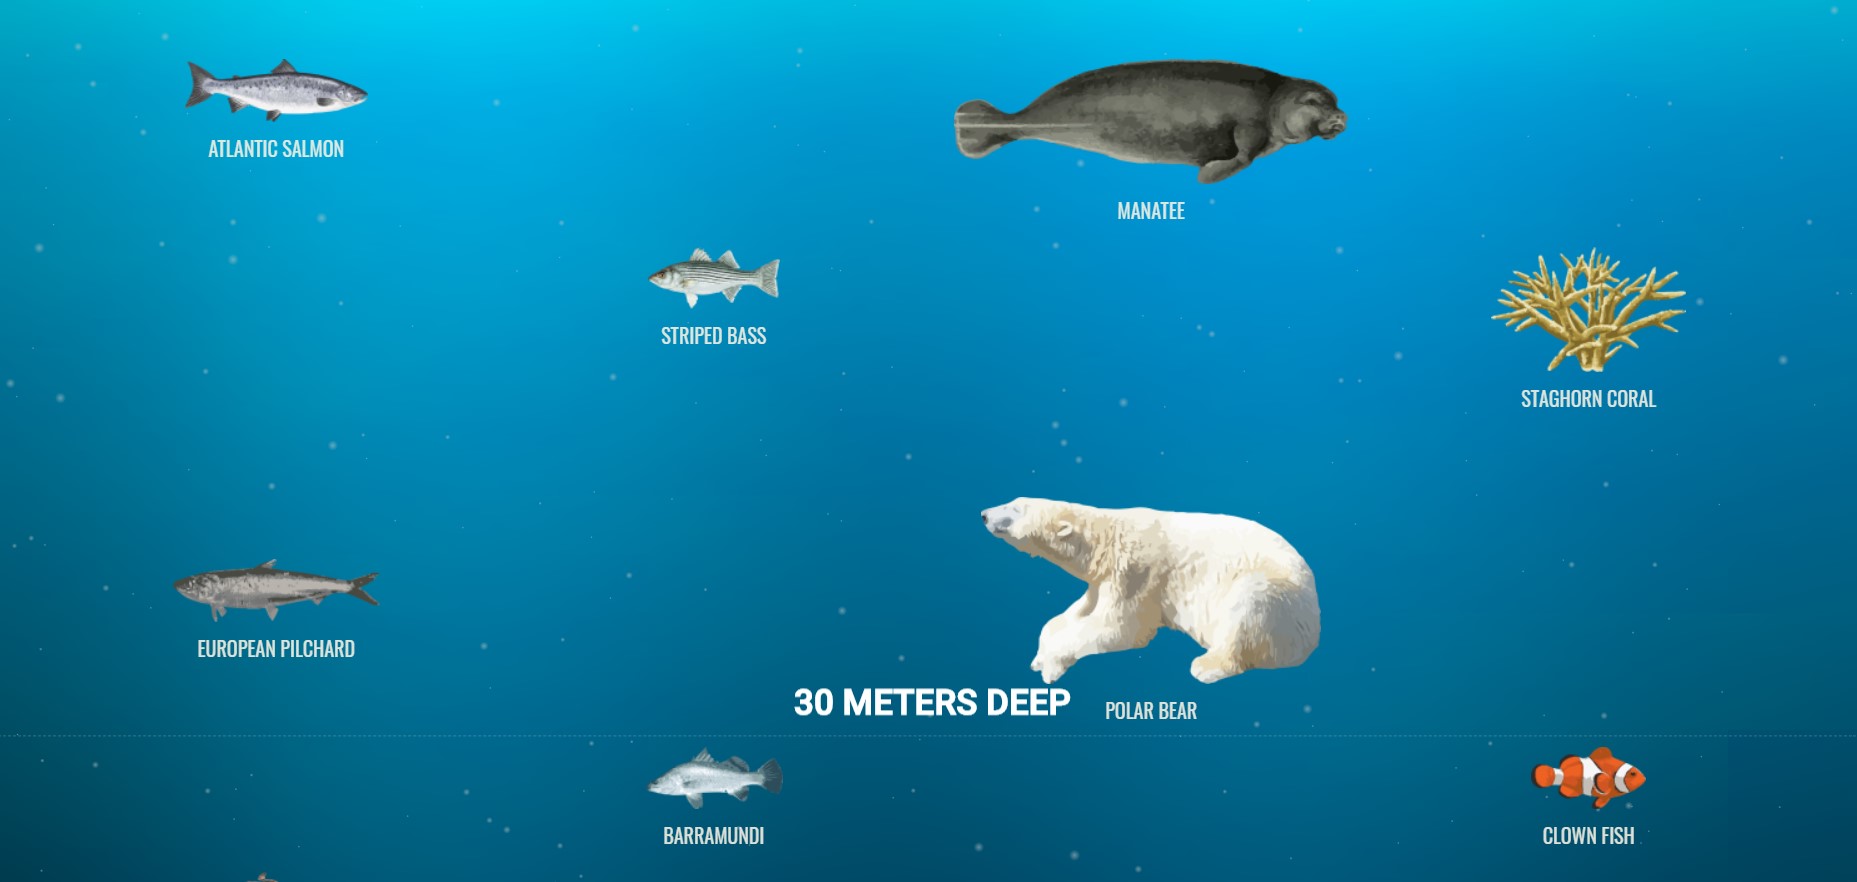 スクロールするとどんどん深海に潜れるサイトがおもしろい…意外な生物